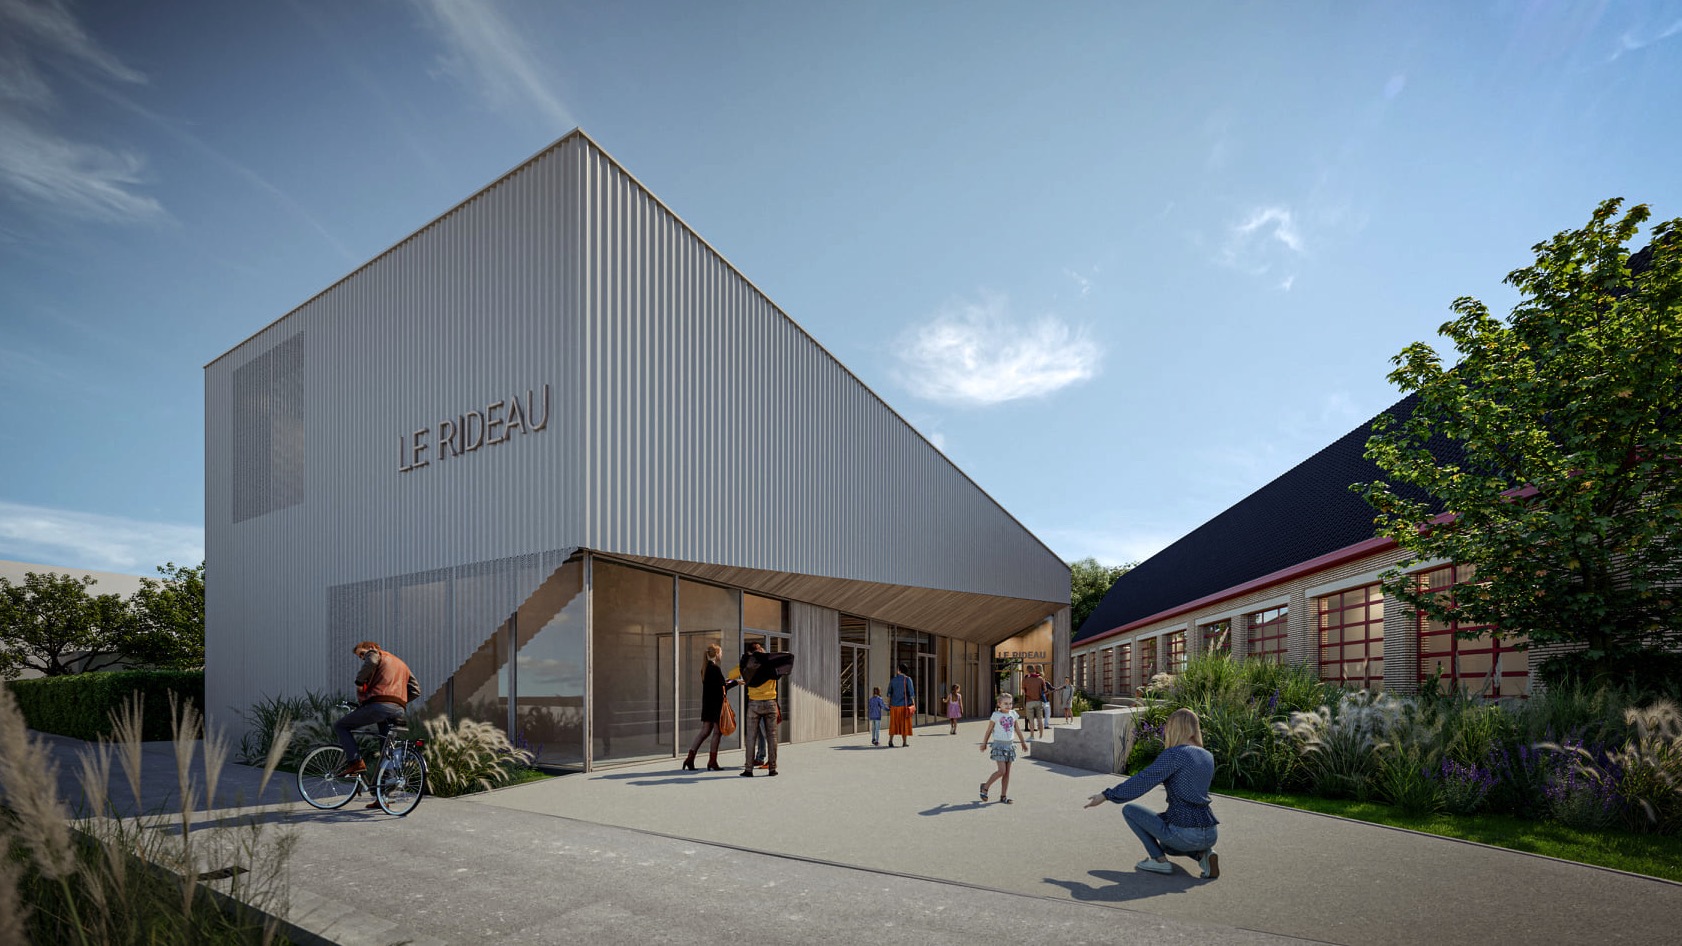 L'atelier d'architecture Meunier-Westrade de Tournai remporte le concours pour la construction de la maison rurale de Silly